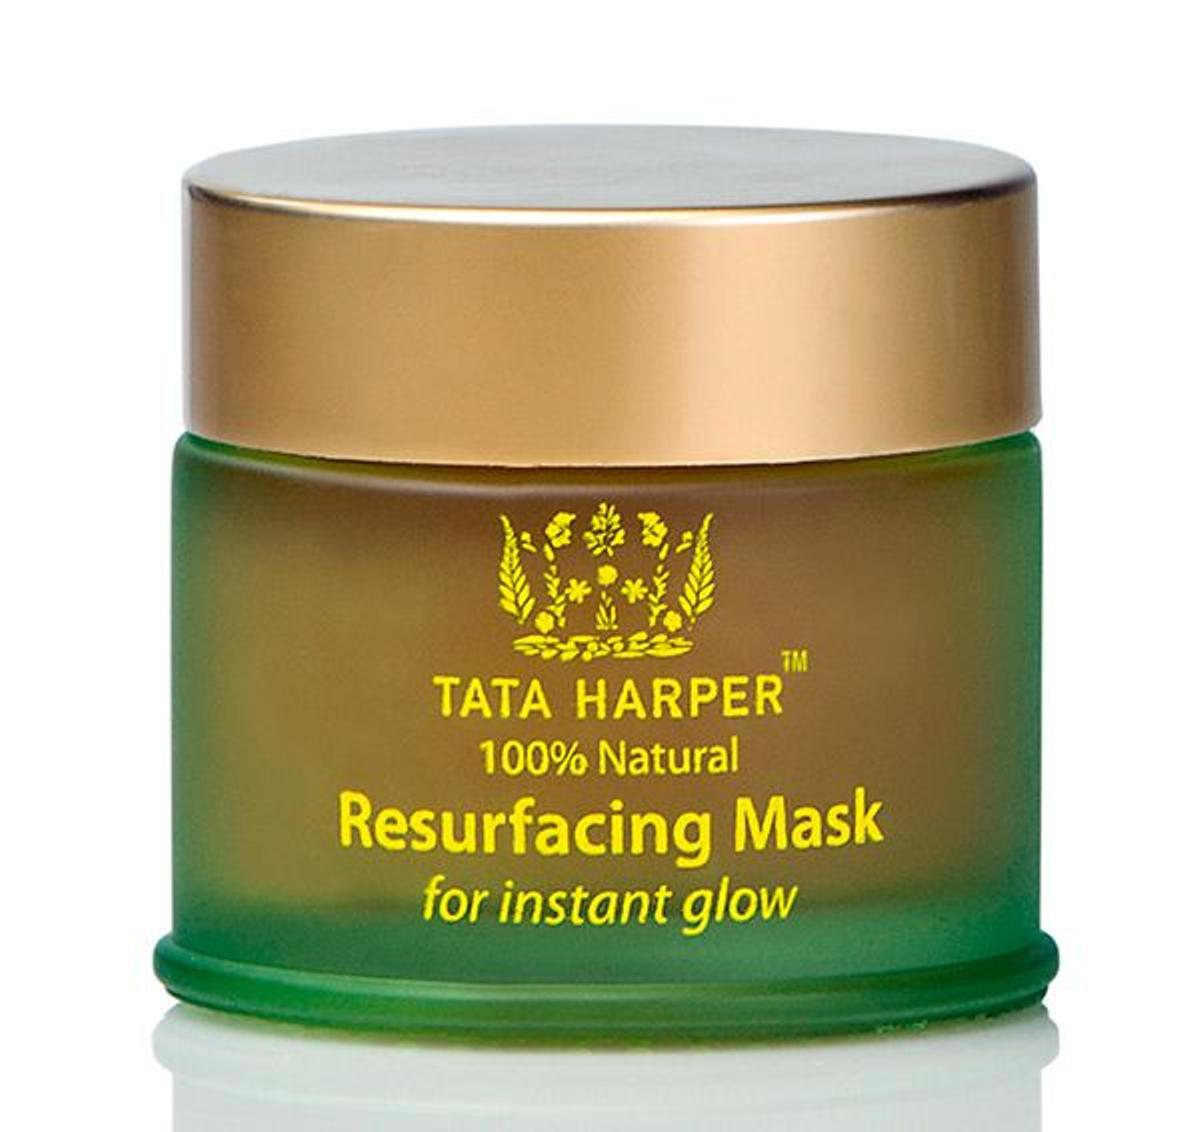 Mascarilla Resurfacing Mask, Tata Harper